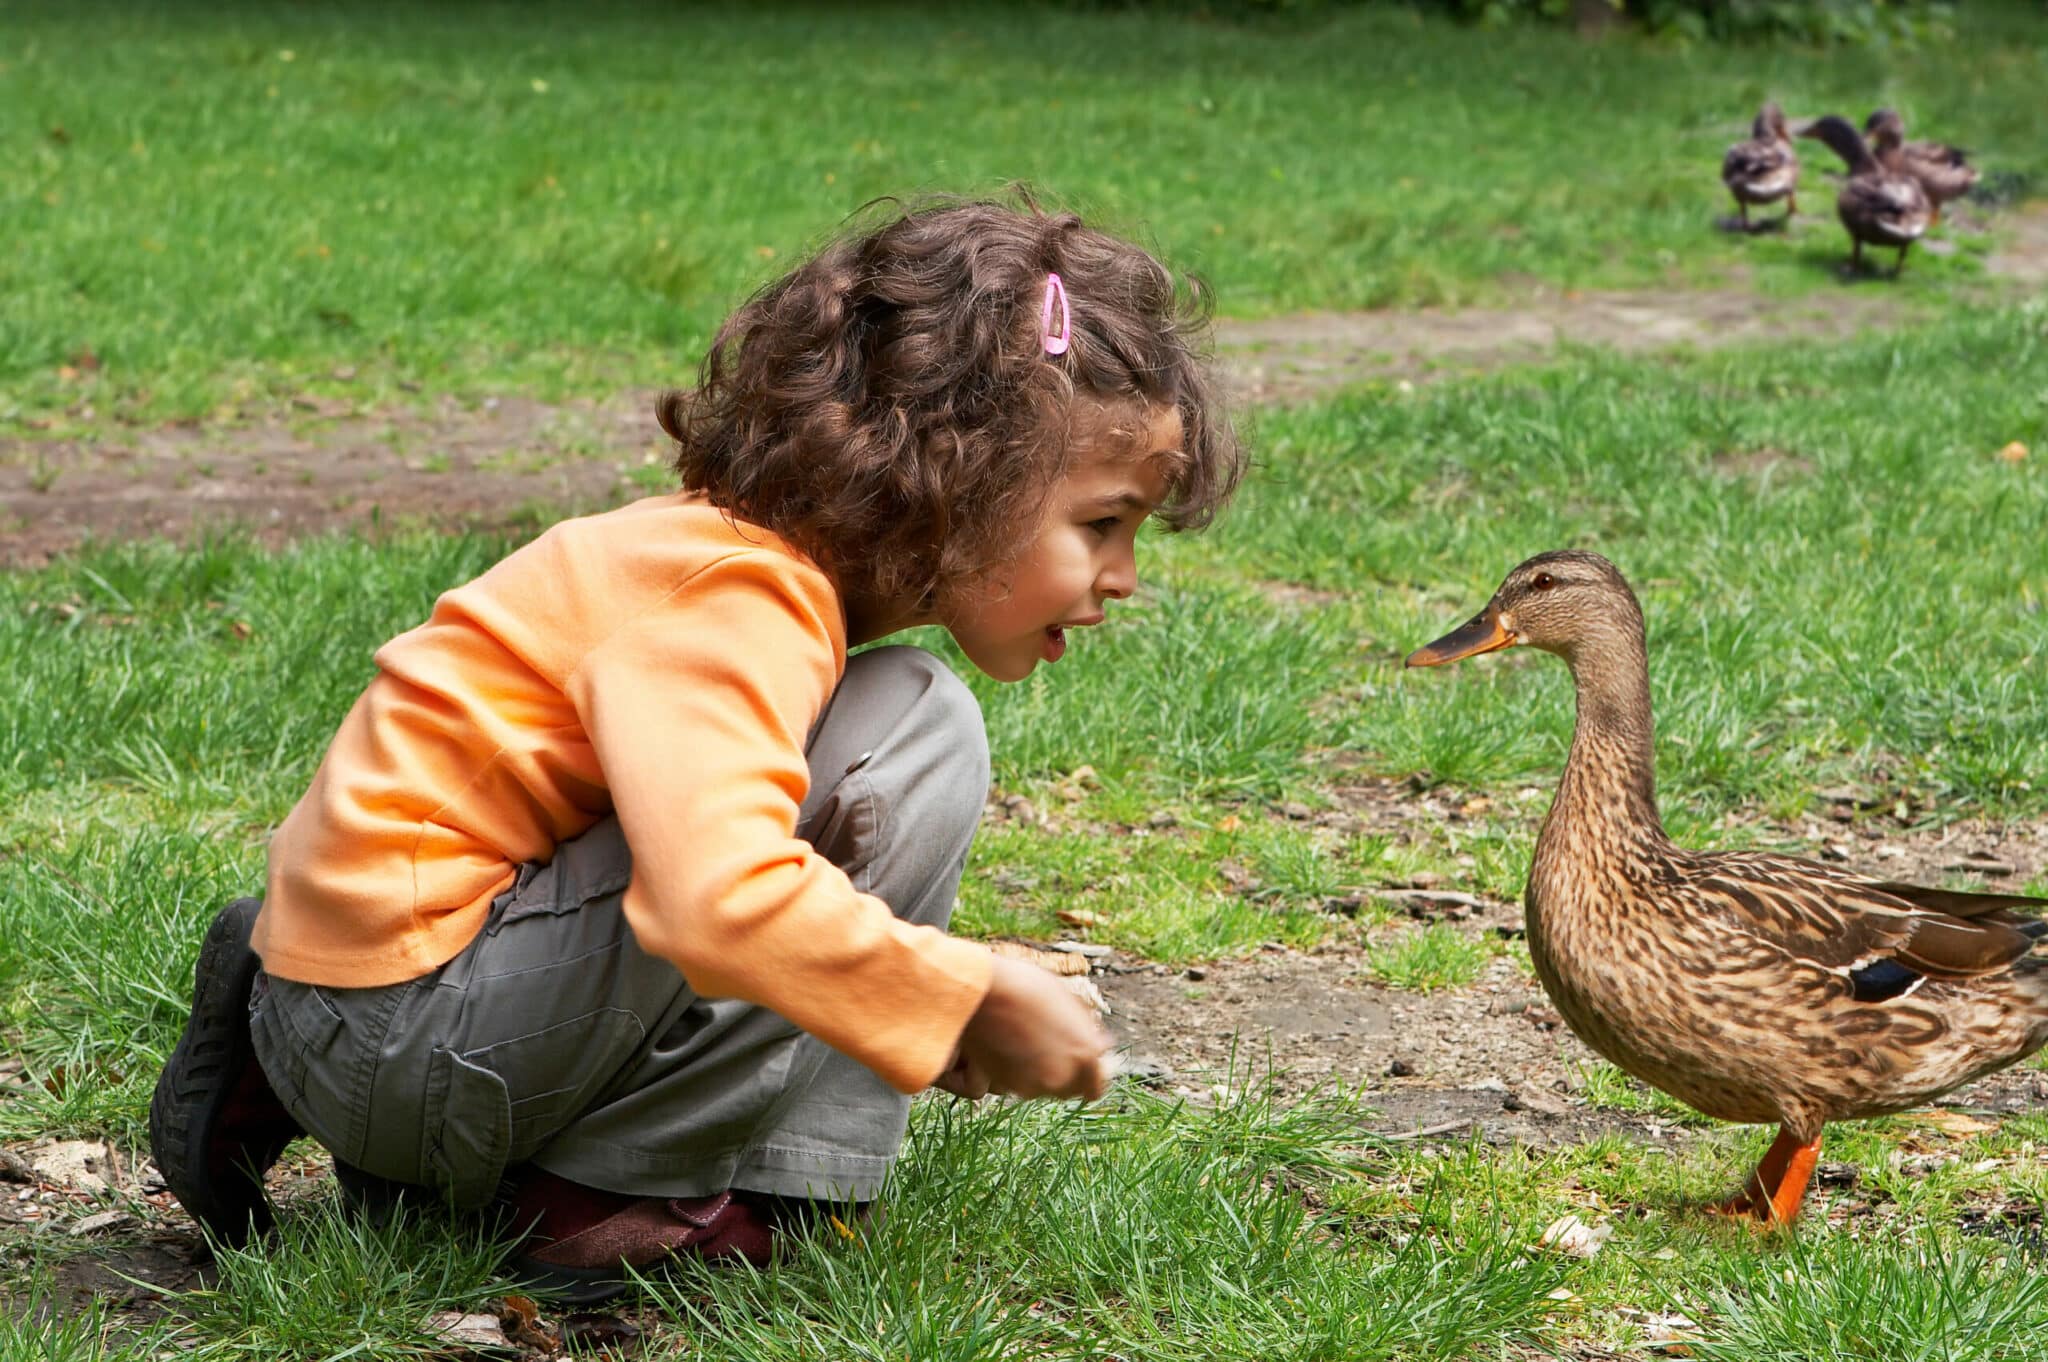 Little girl feeding the ducks in the park